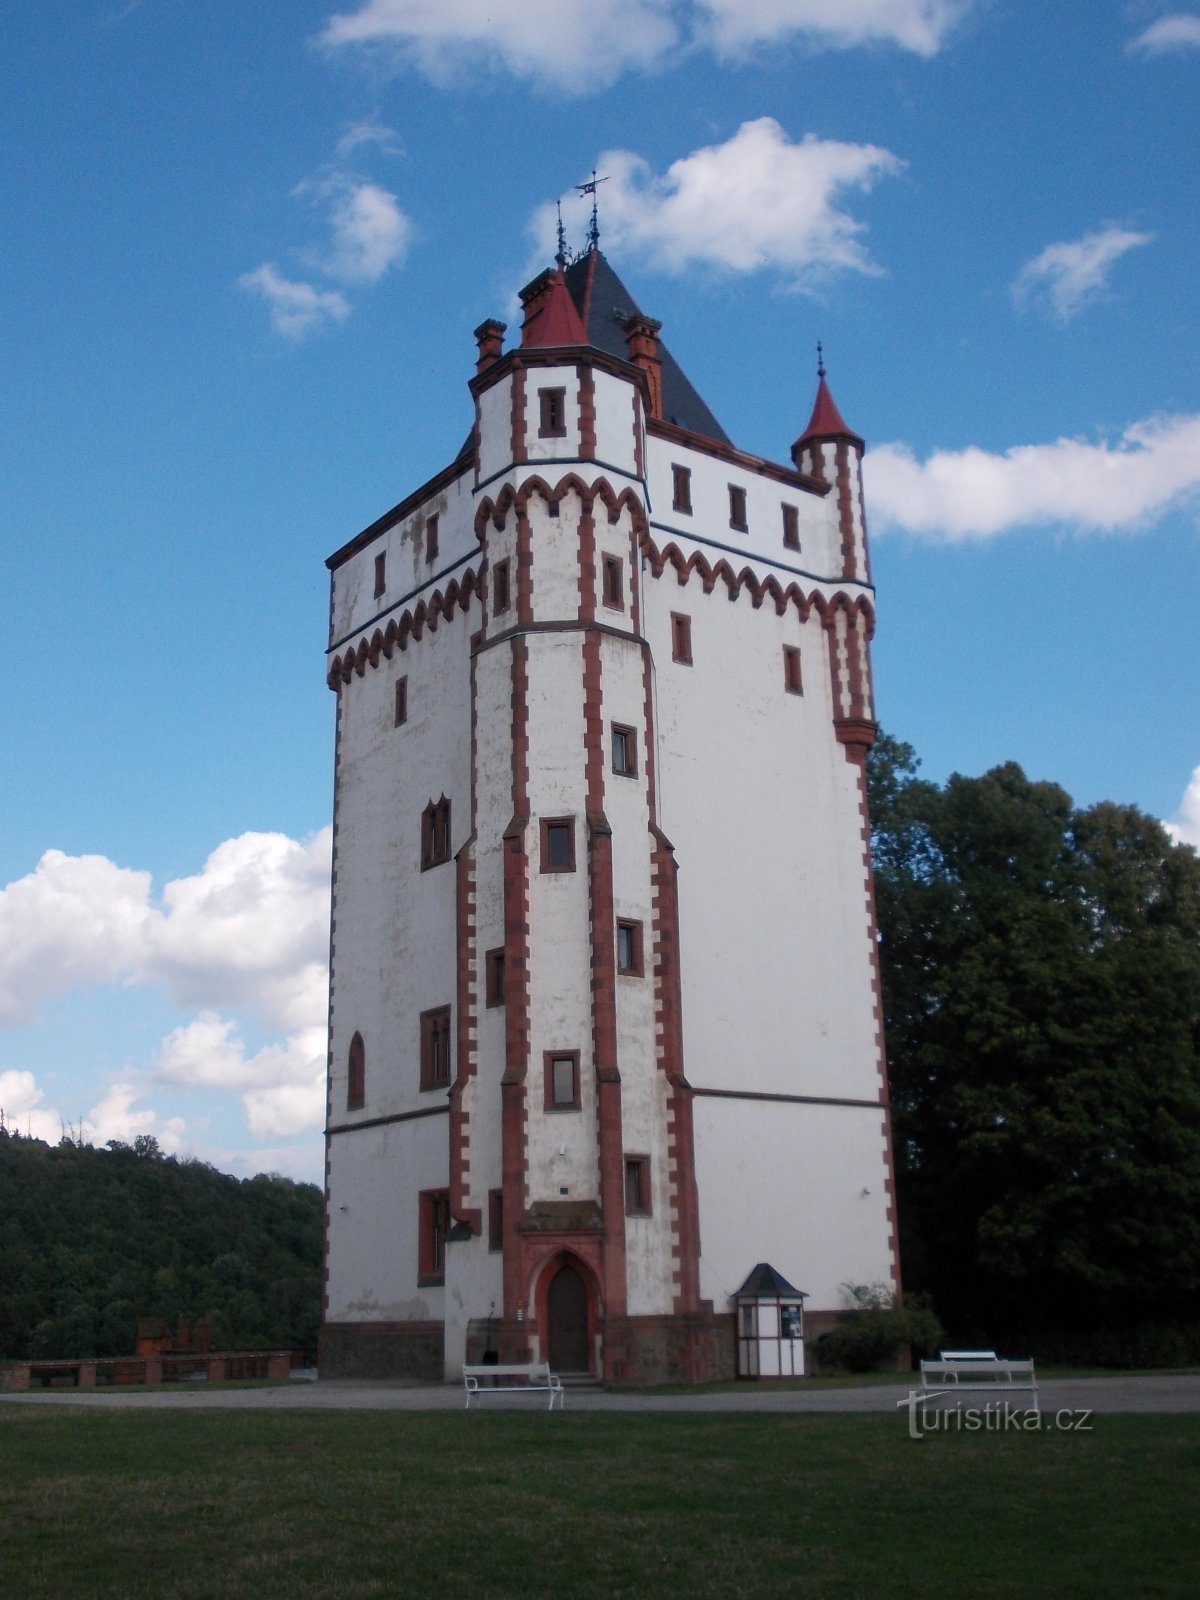 tårn i begyndelsen af ​​slotsparken